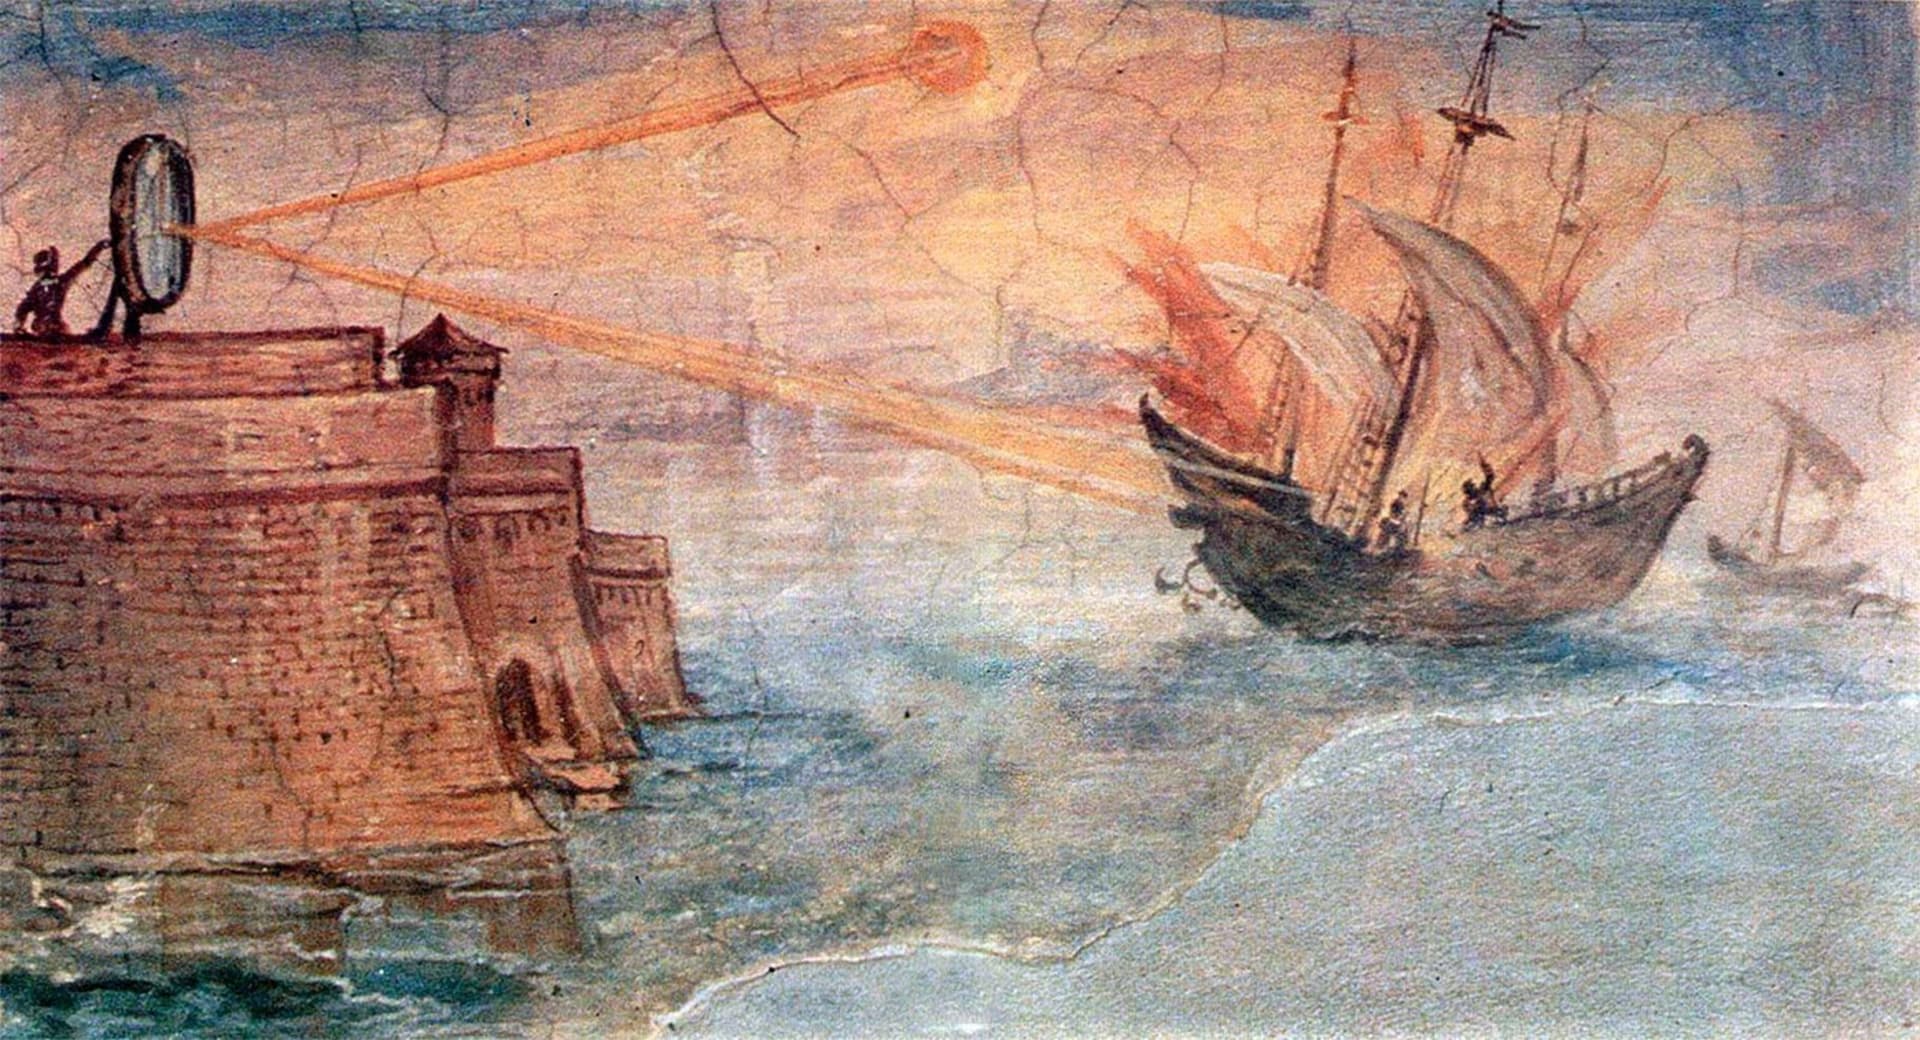 Nástěnná malba v galerii ve Florencii zobrazující řeckého matematika Archiméda, který používá zrcadlo ke spálení římských vojenských lodí. Obraz namaloval v roce 1600 Giulio Parigi